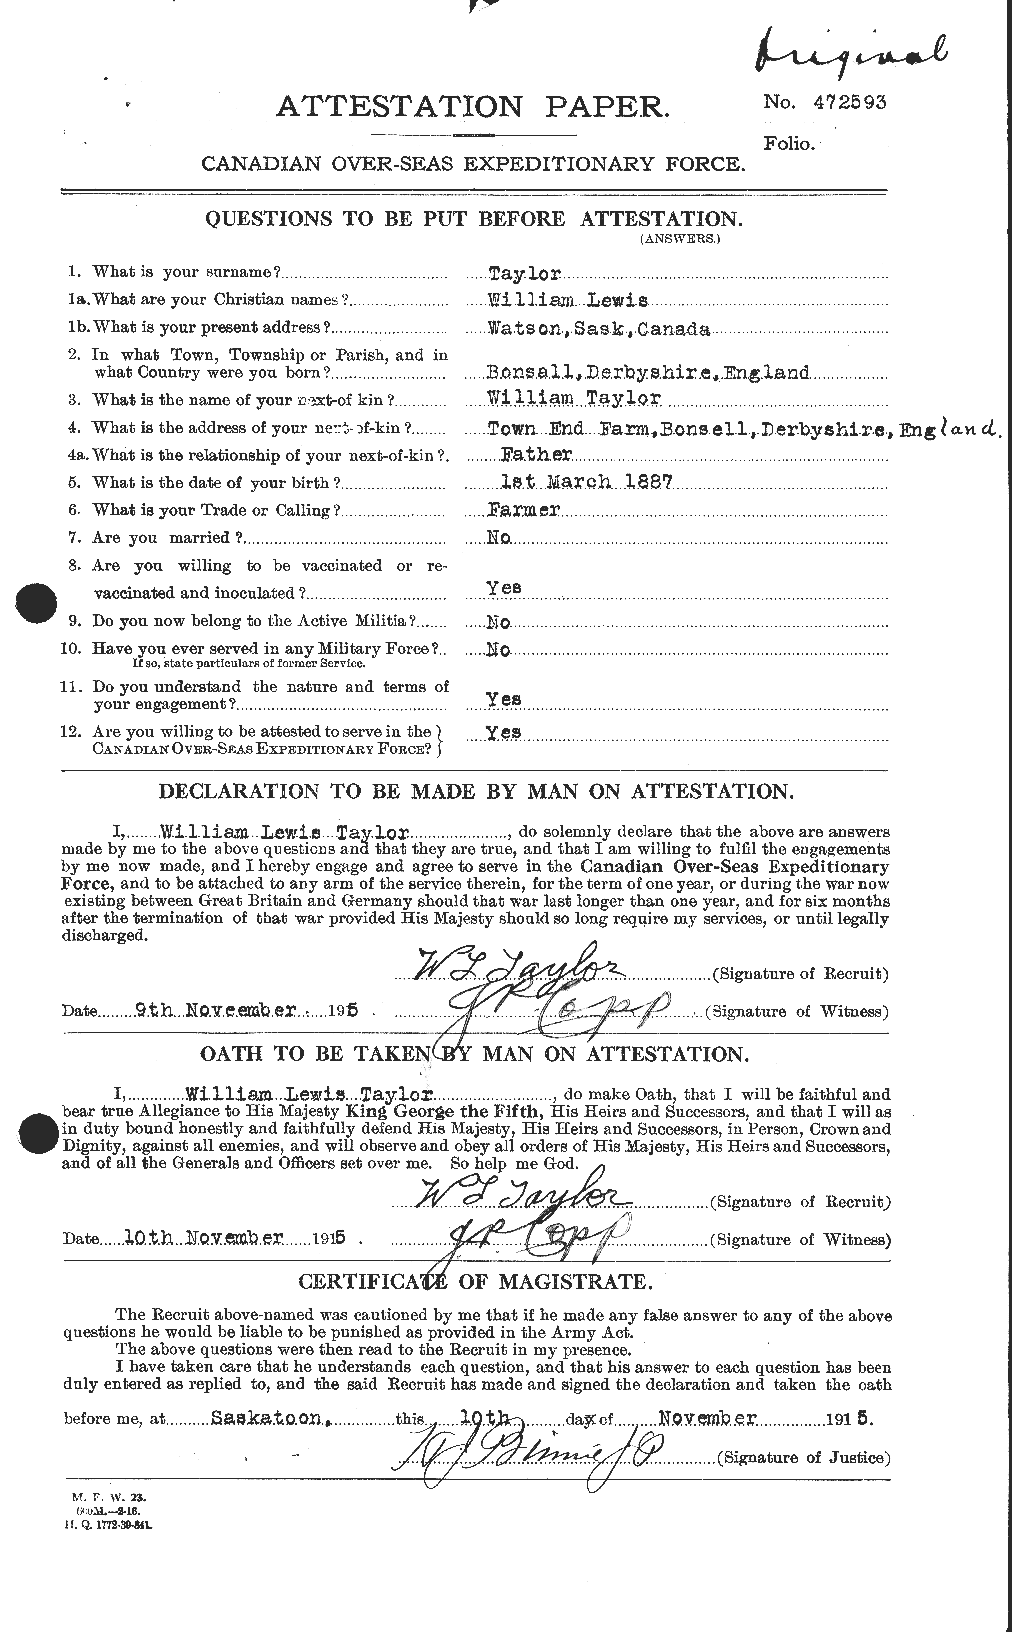 Dossiers du Personnel de la Première Guerre mondiale - CEC 628324a